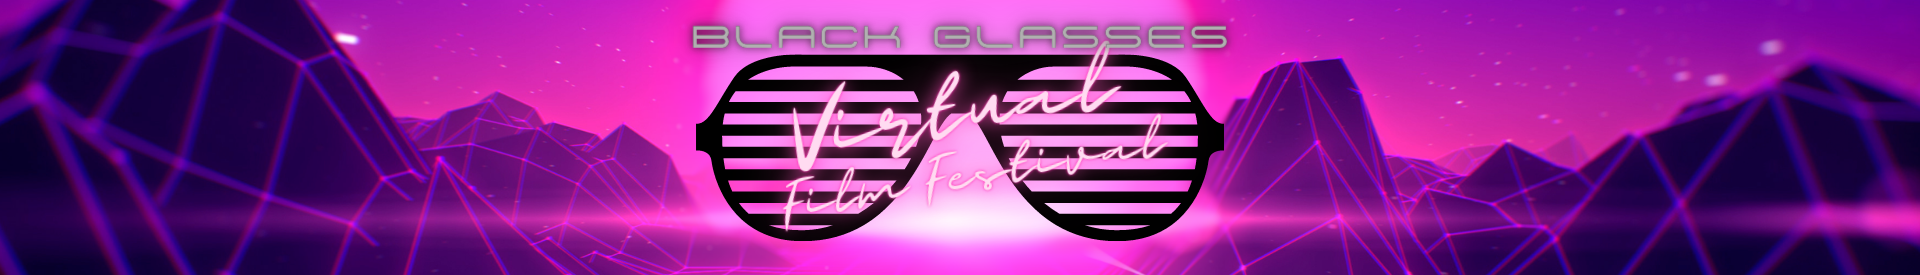 Black Glasses Film Festival